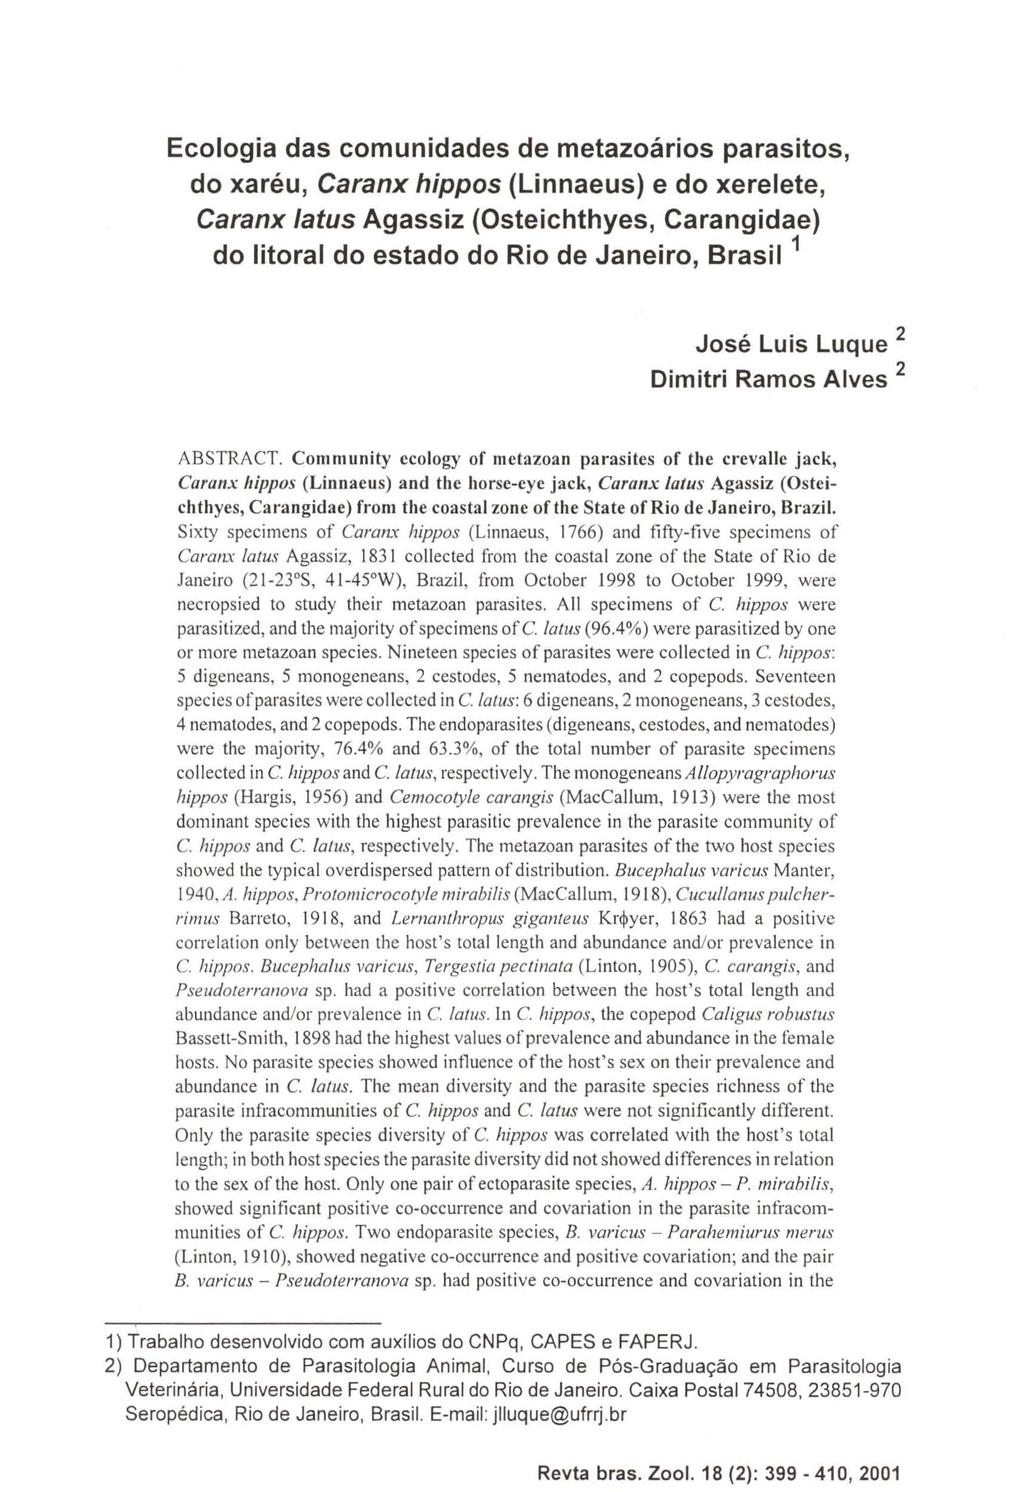 Ecologia das comunidades de metazoários parasitos, do xaréu, Caranx hippos (Linnaeus) e do xerelete, Caranx tatus Agassiz (Osteichthyes, Carangidae) do litoral do estado do Rio de Janeiro, Brasil 1